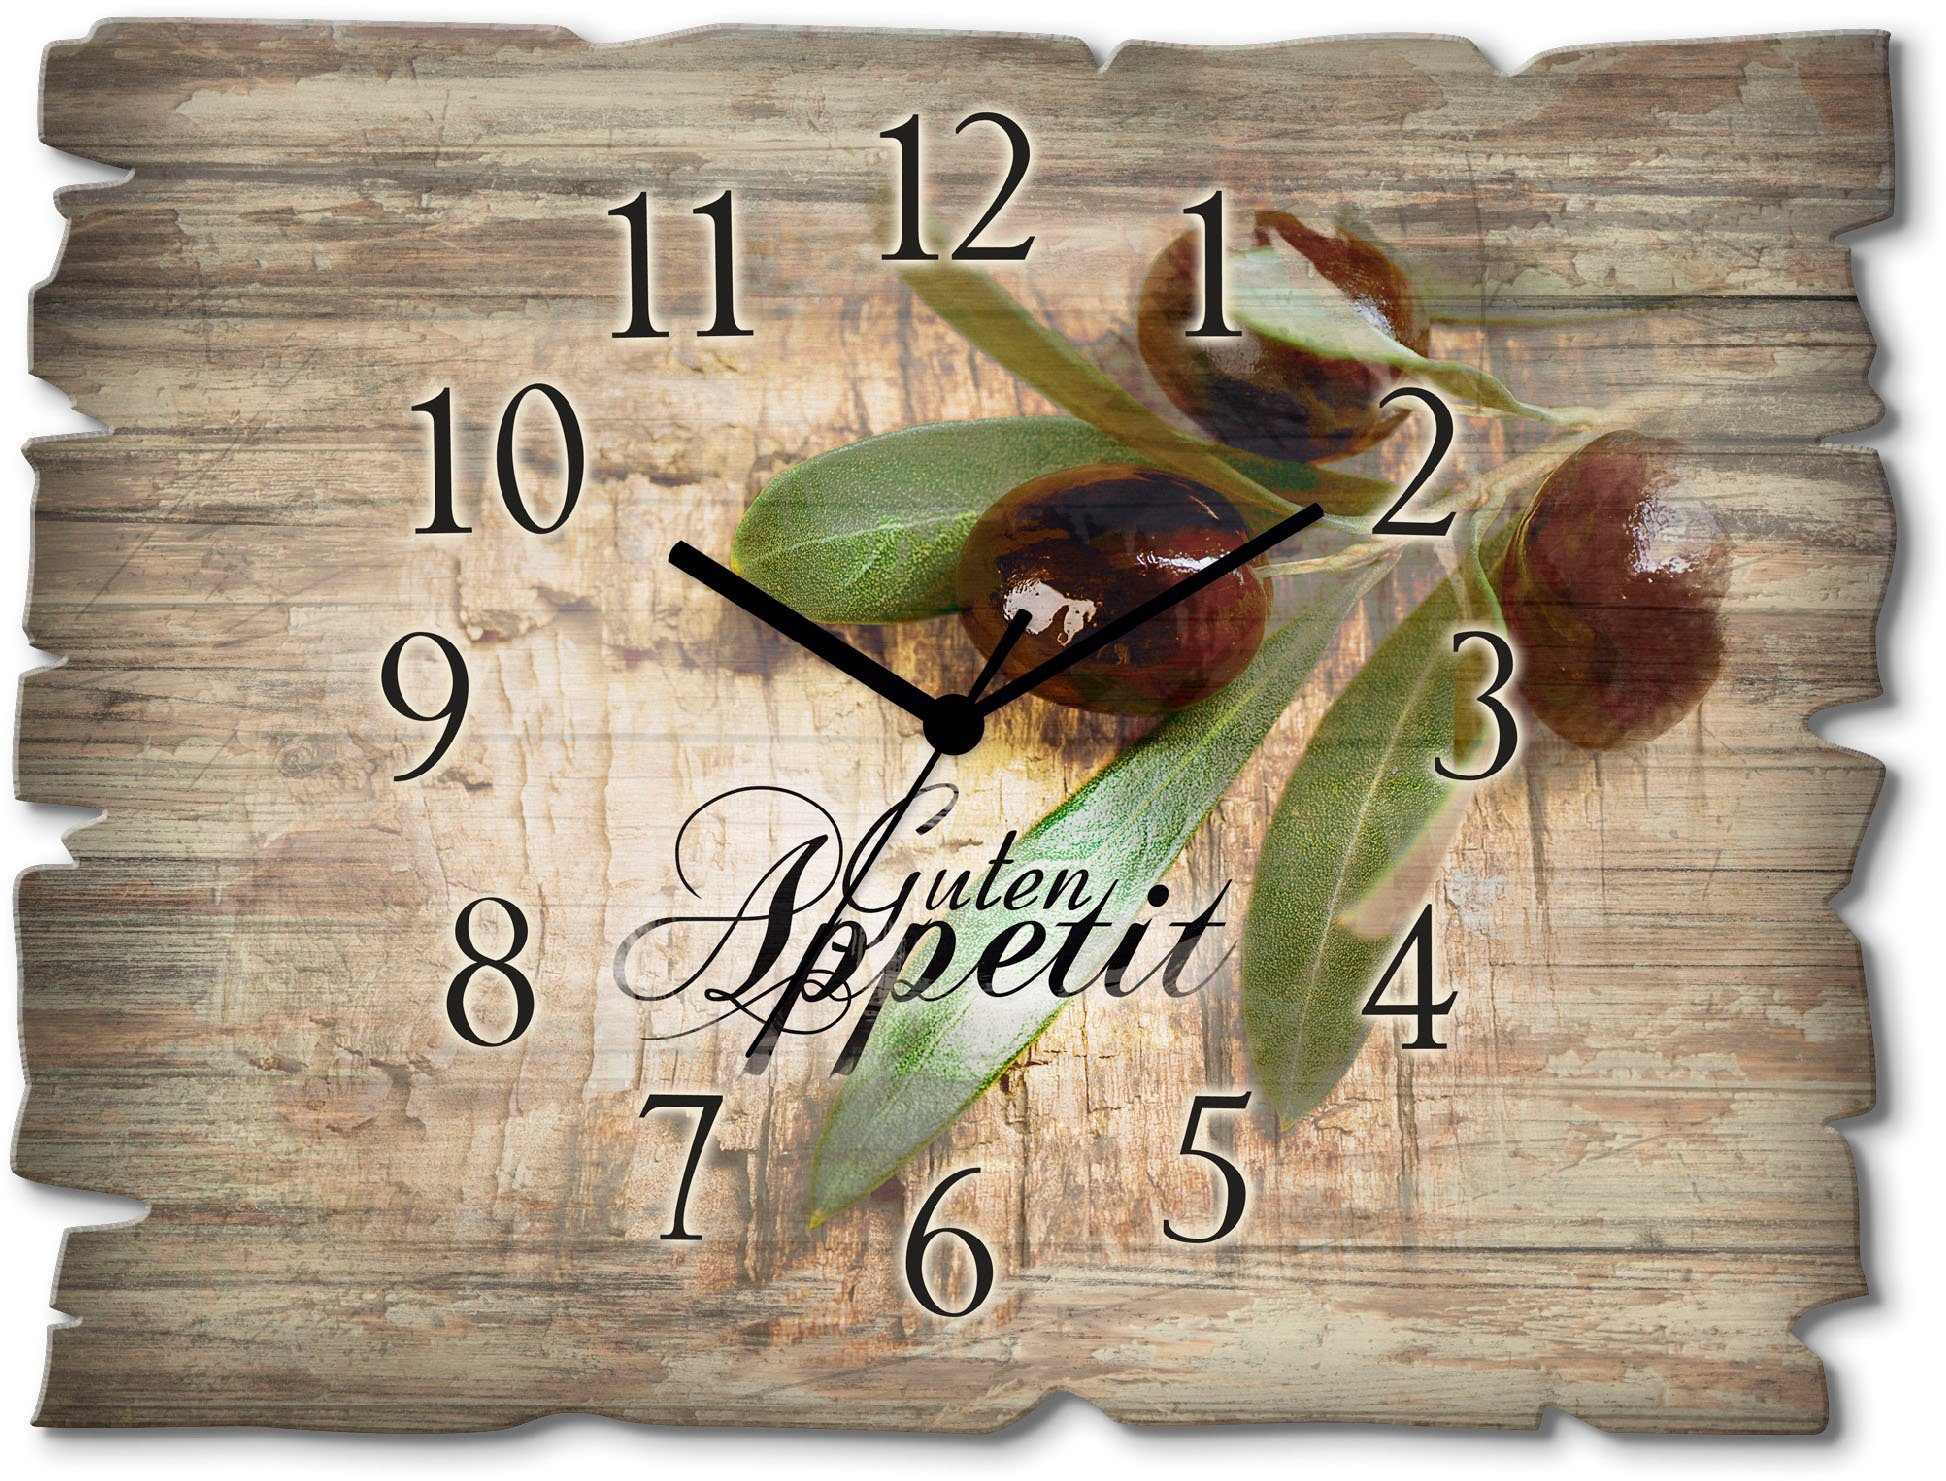 Artland Wanduhr Oliven Guten Appetit (wahlweise mit Quarz- oder Funkuhrwerk, lautlos ohne Tickgeräusche)